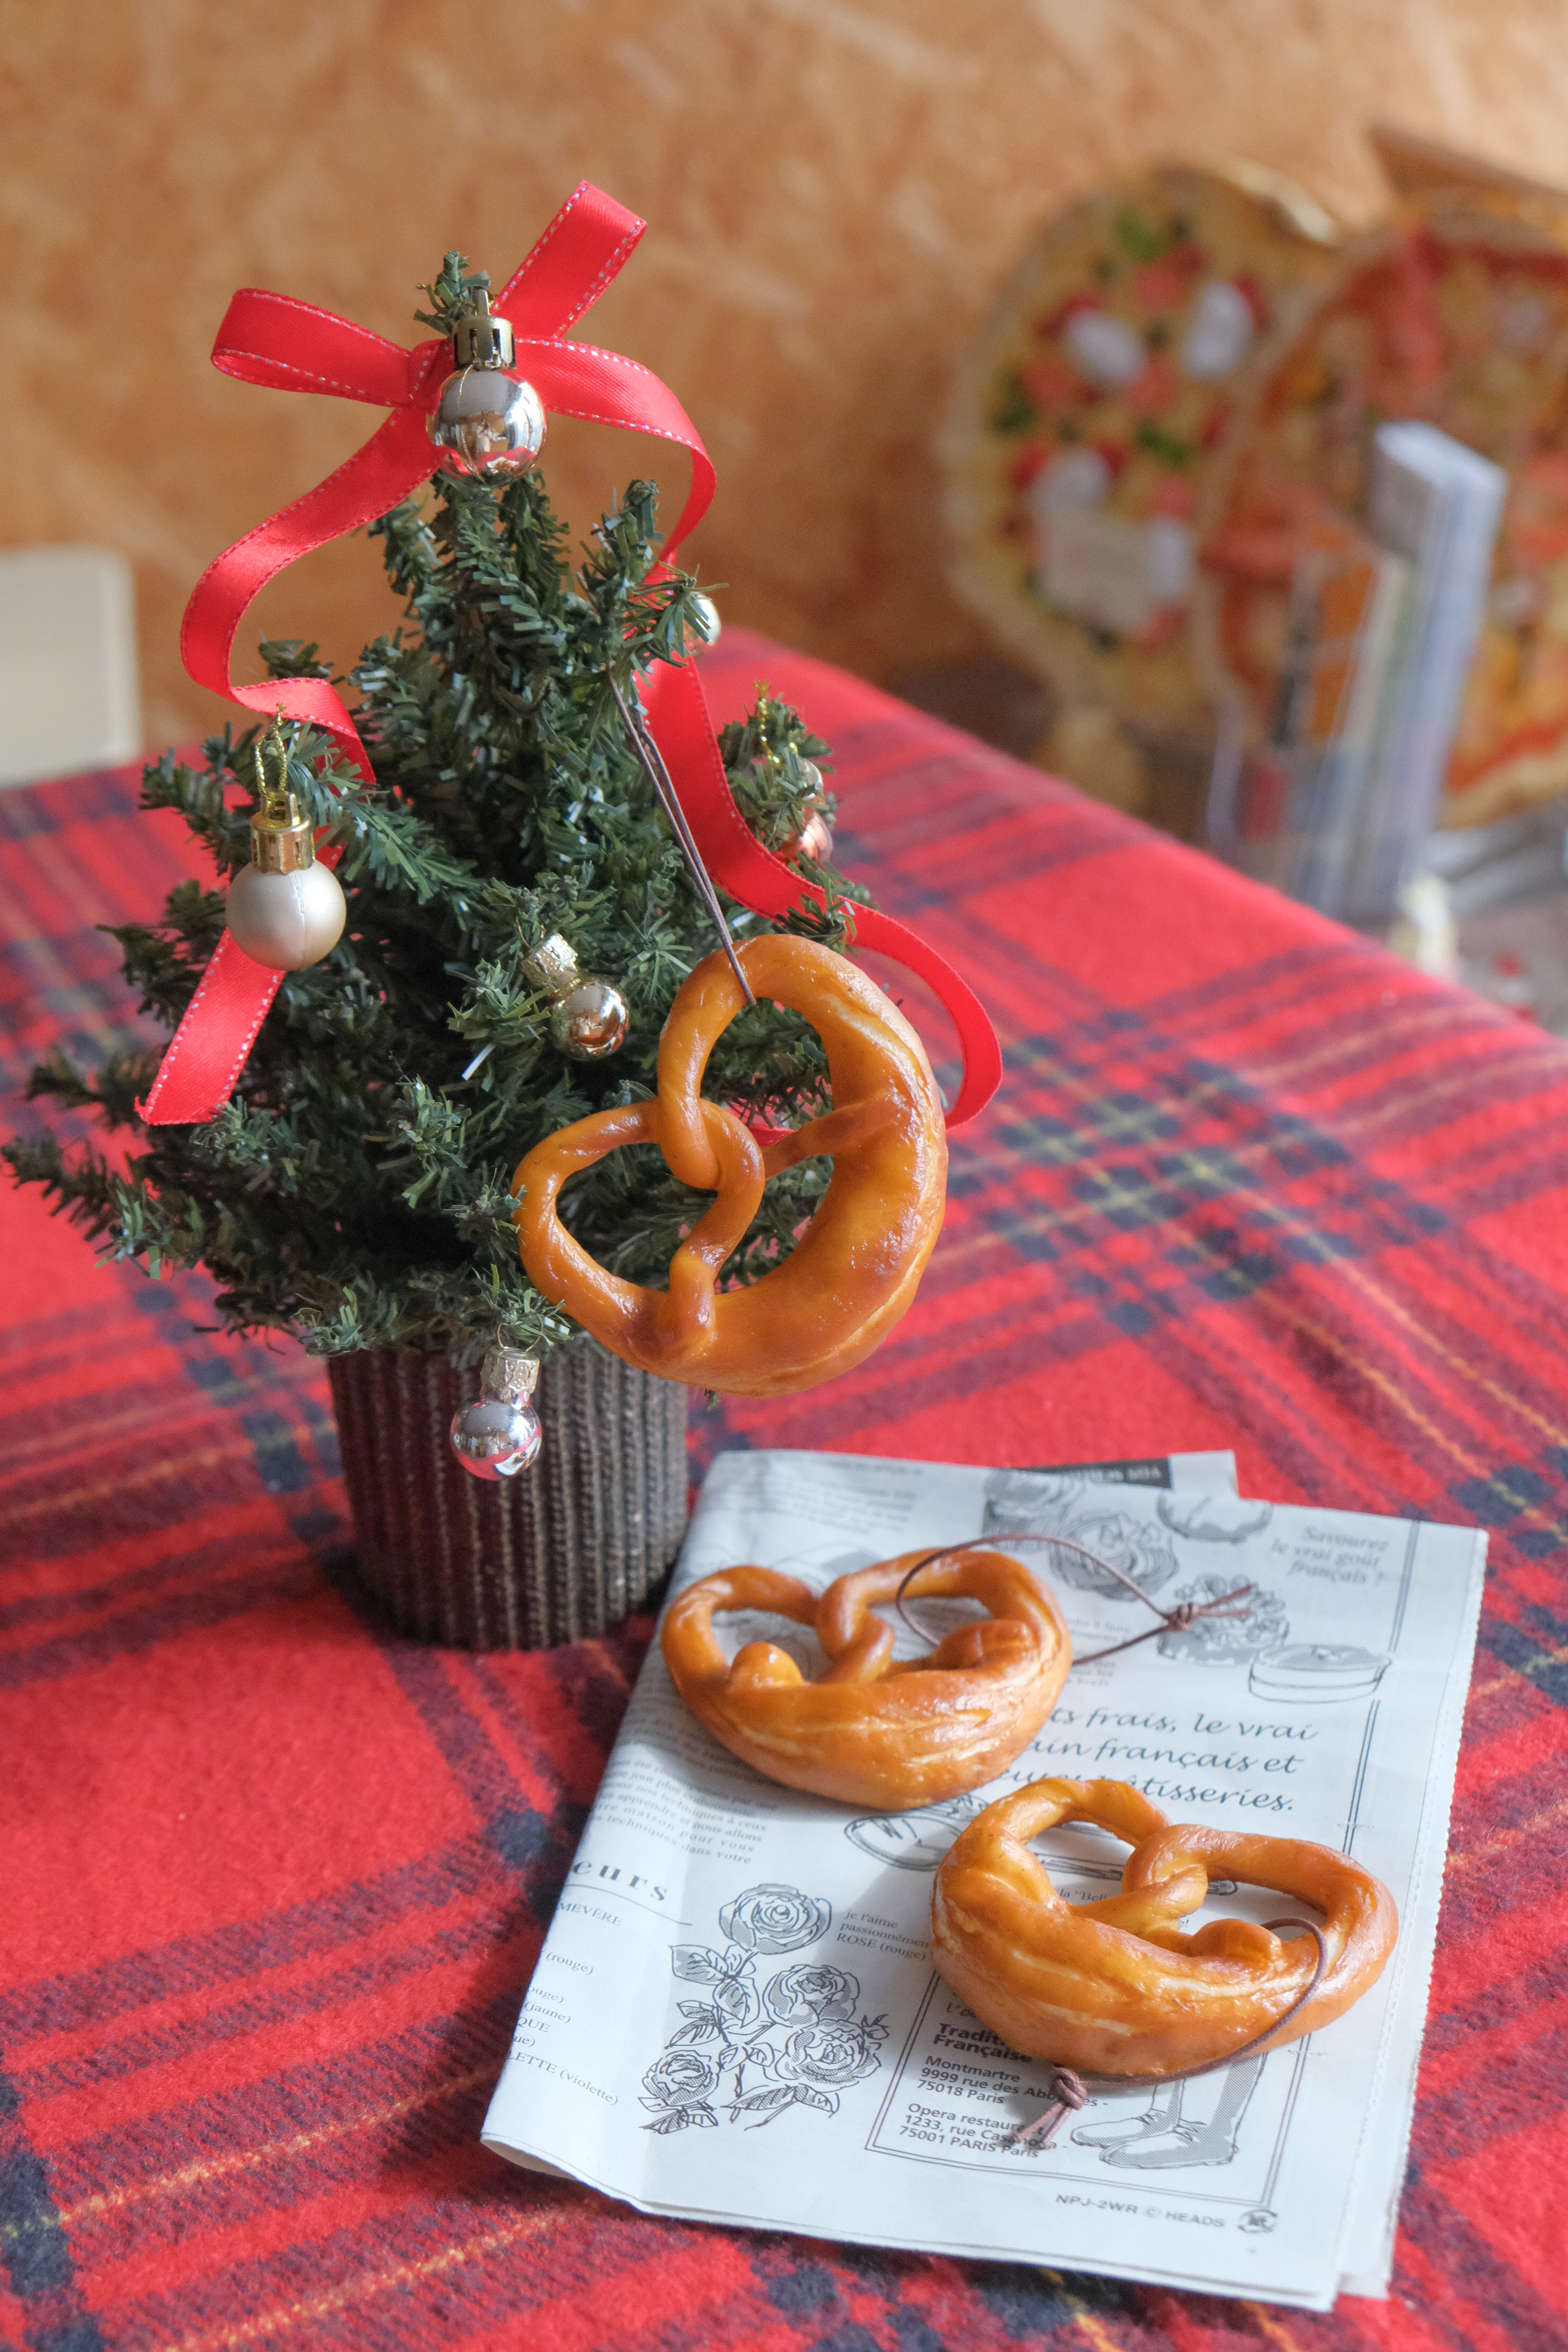 これは元祖食品サンプル屋【クリスマス限定】ヨーロッパ菓子のオーナメントプレッツェルの使用イメージ写真です。